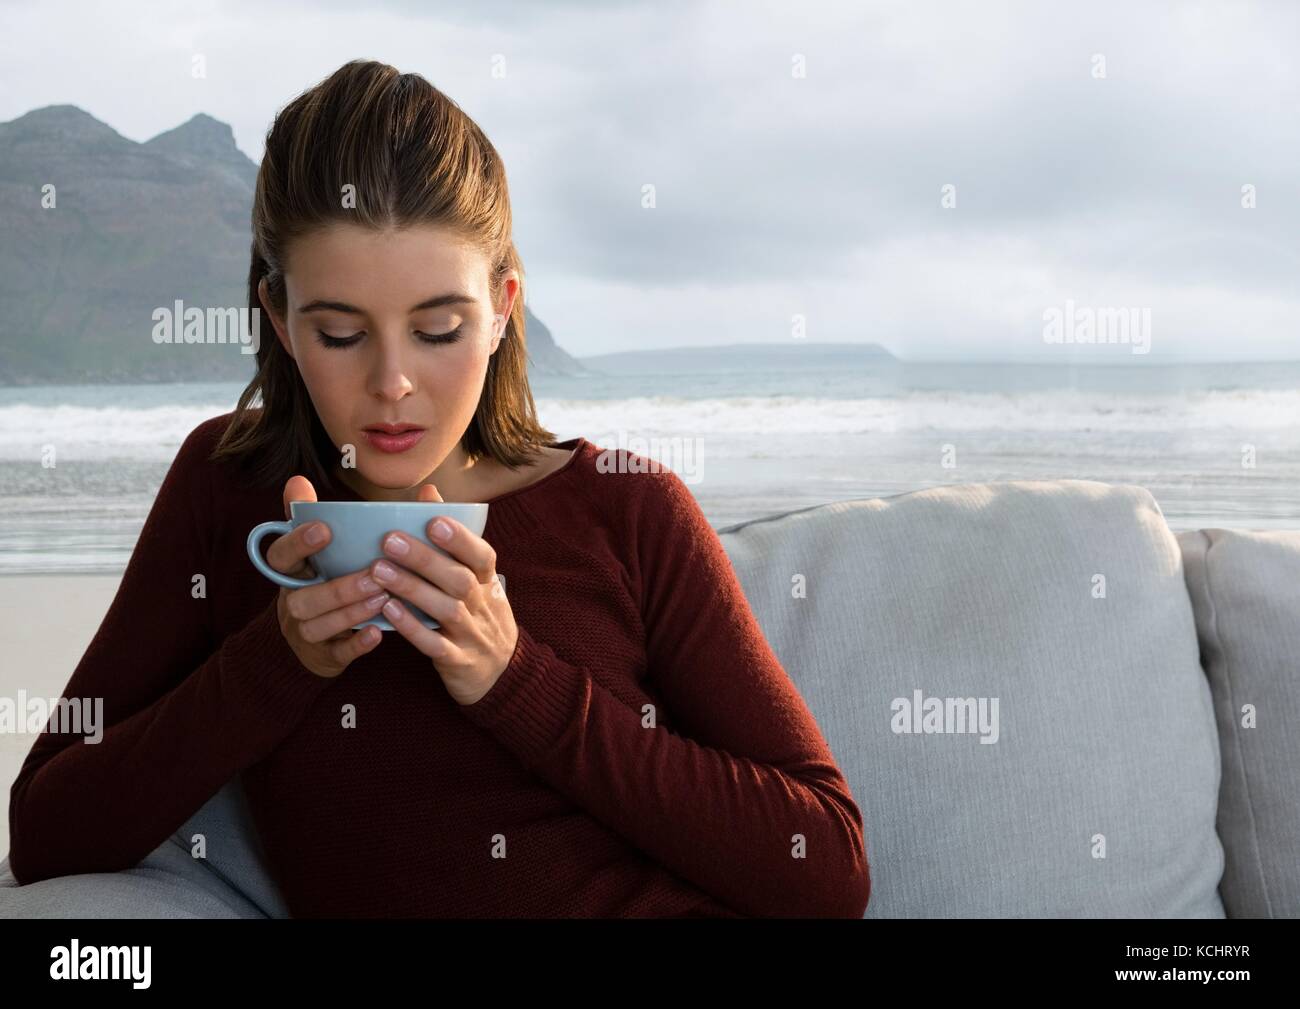 Digital composite von Frau trinkt aus der Schale auf dem Tisch mit Meerblick Berglandschaft Stockfoto